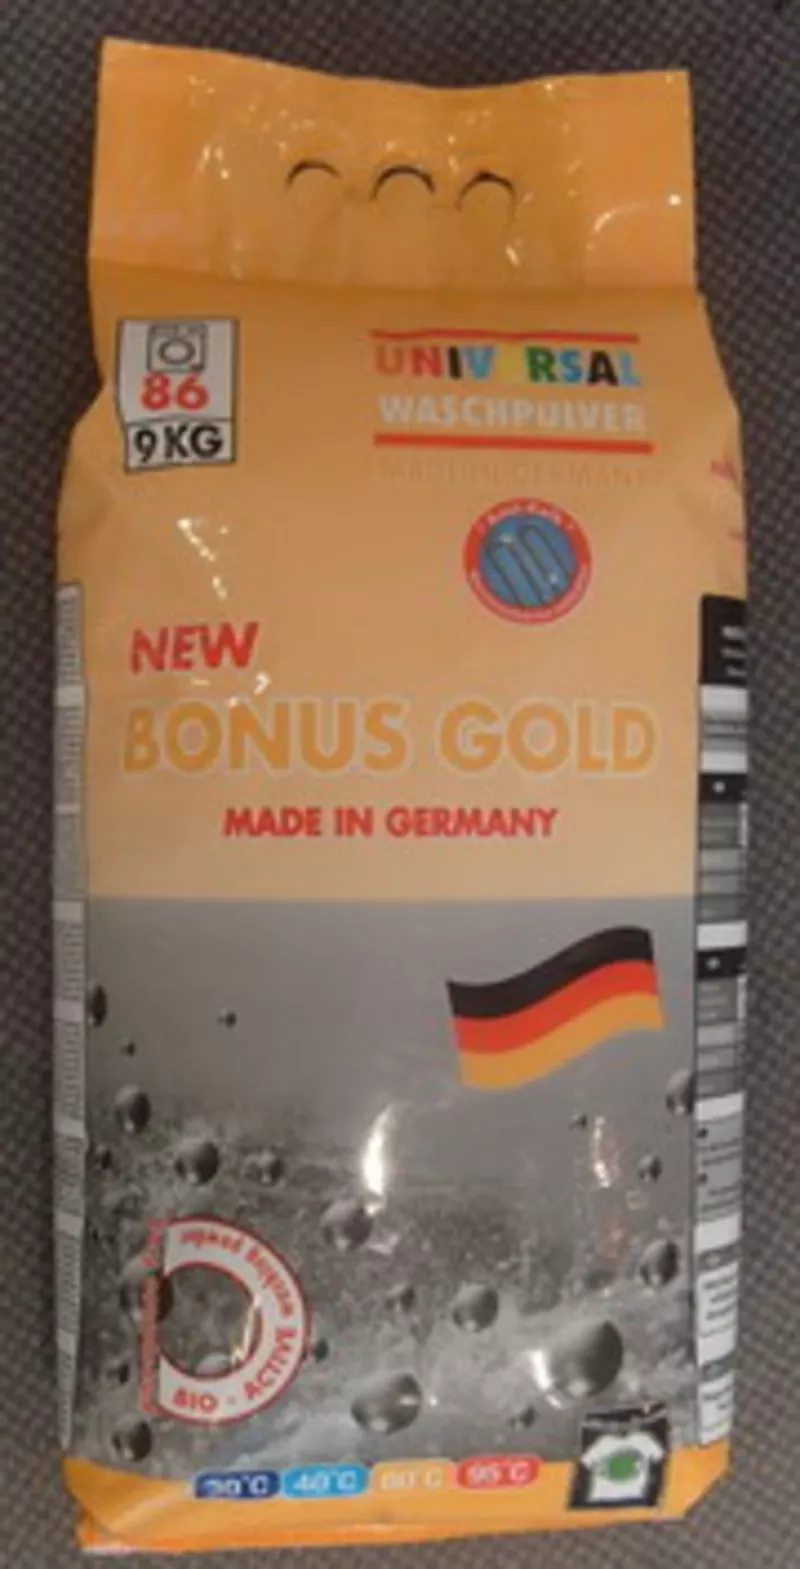 немецкий универсальный стиральный порошок Бонус Голд